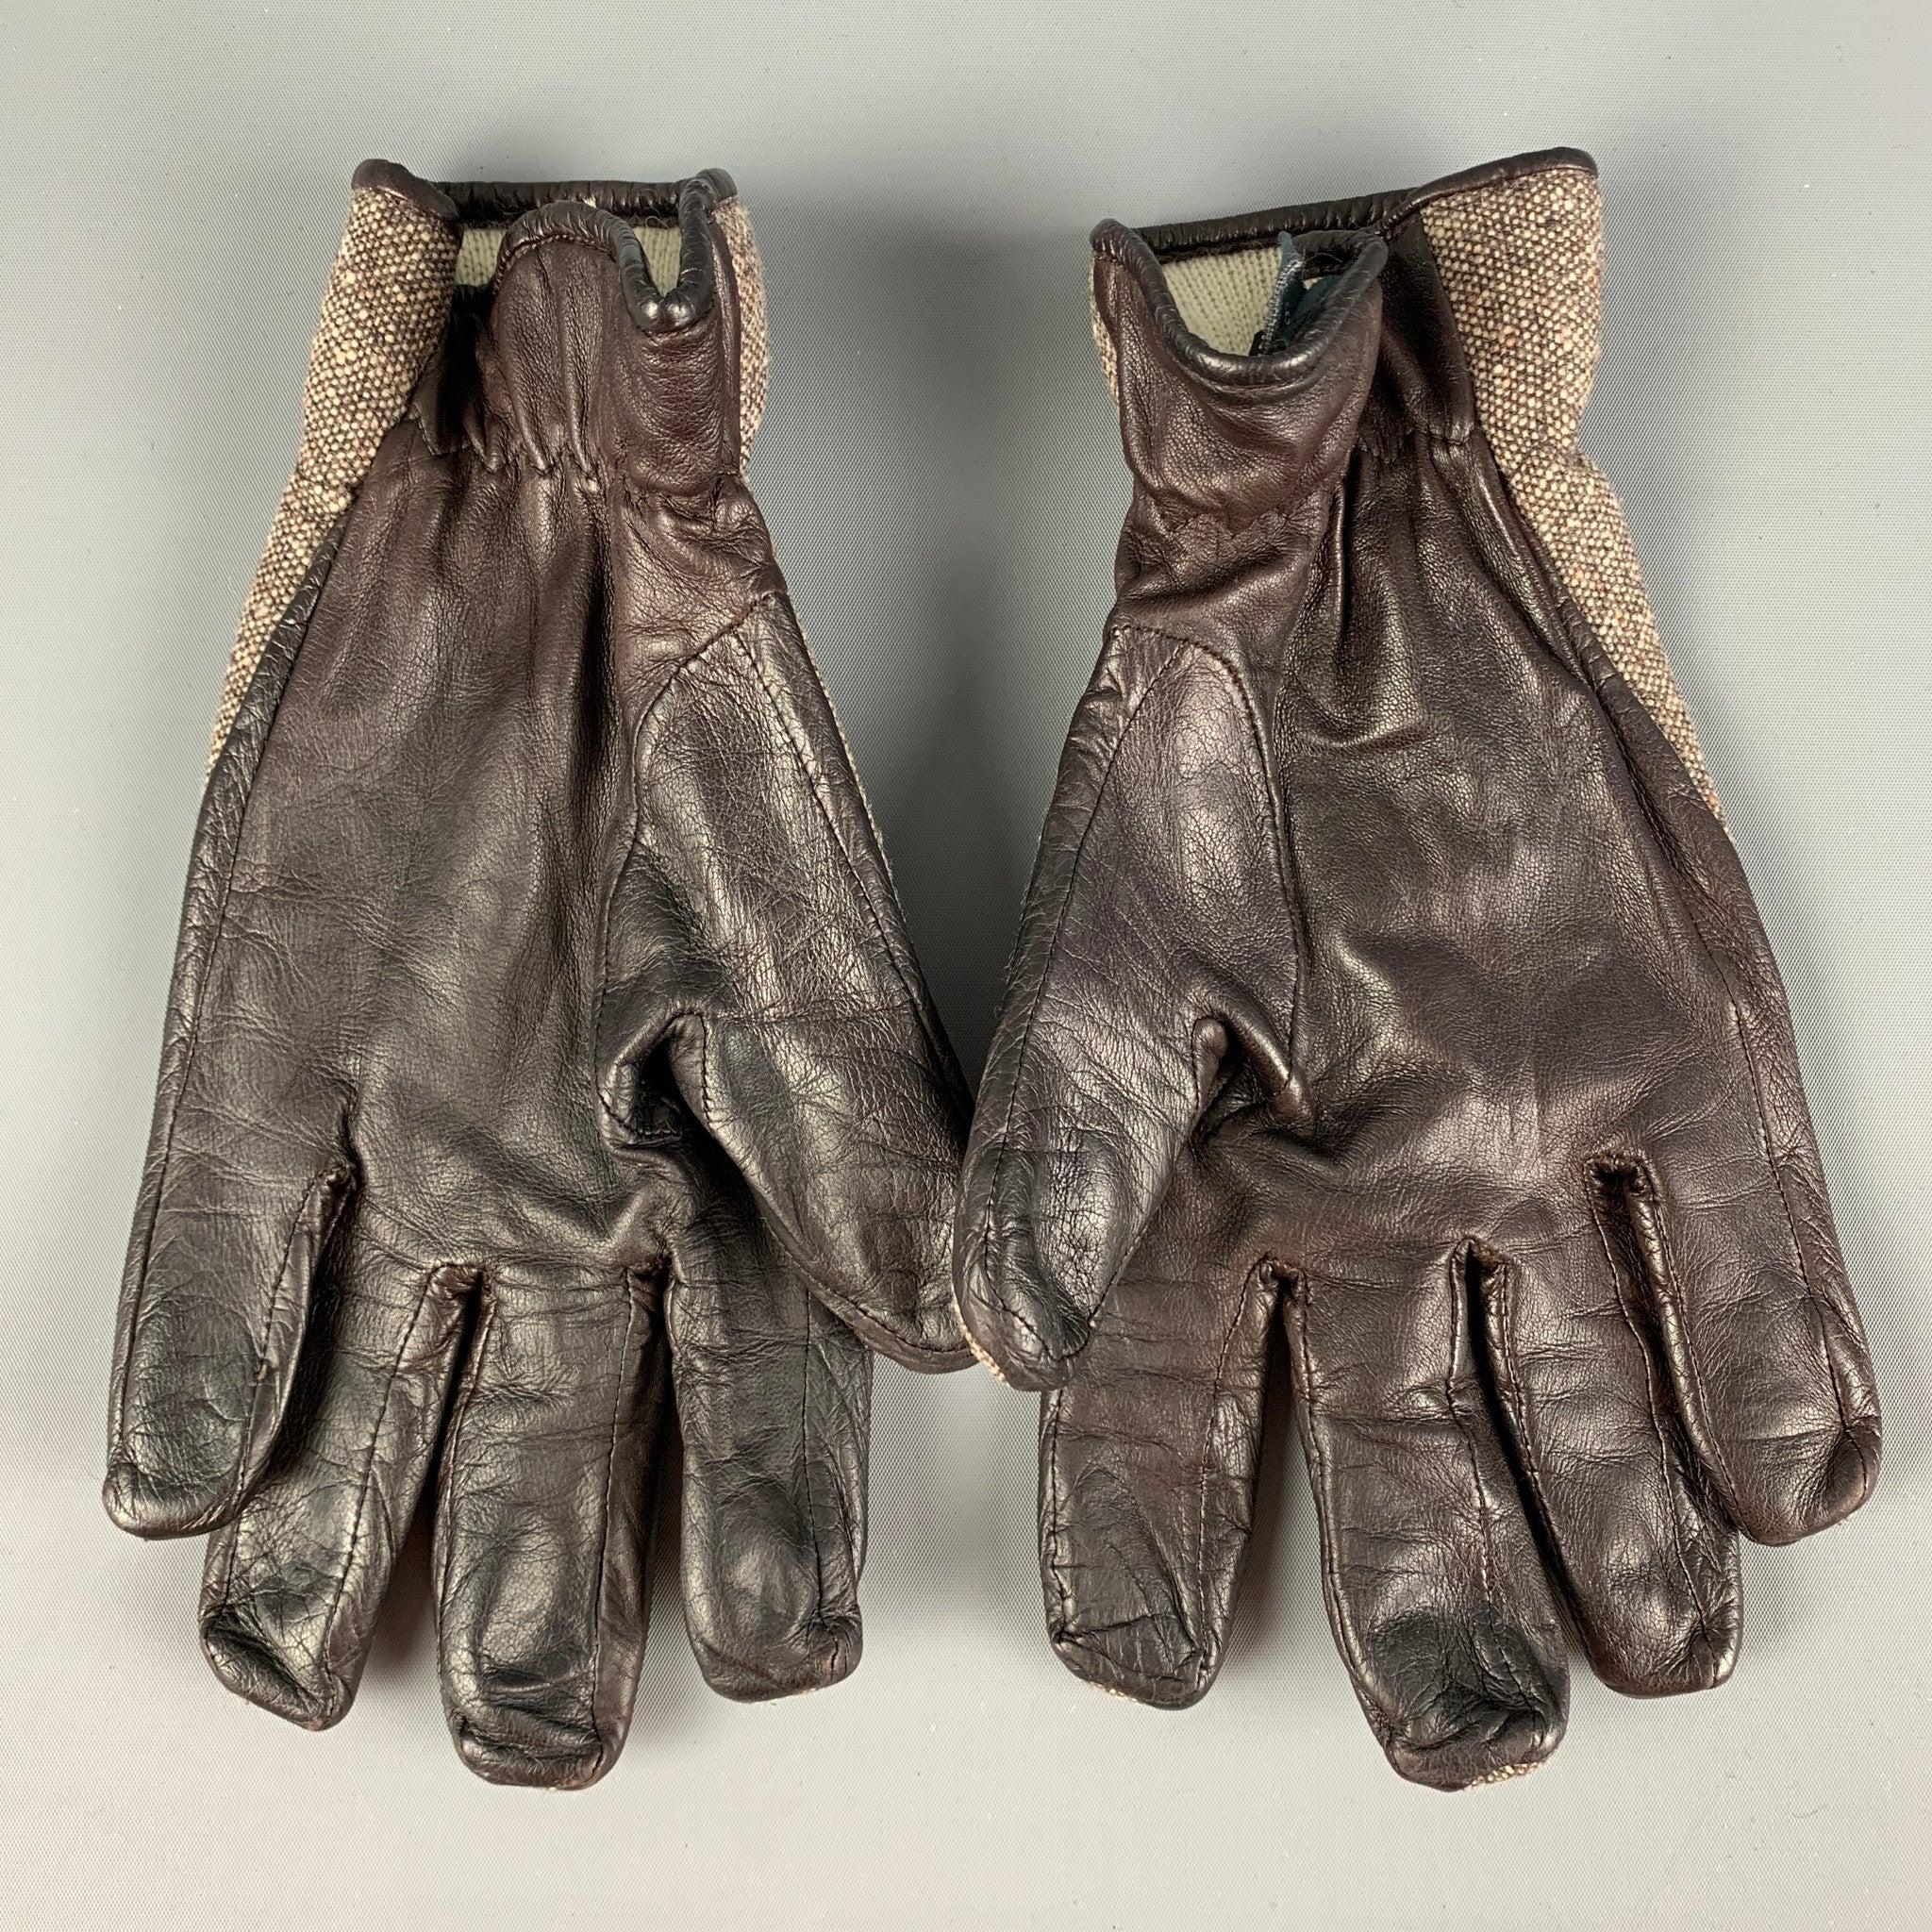 Die GIVENCHY Handschuhe sind aus einem braunen und cremefarbenen Materialmix. Handgefertigt in Italien.
Sehr gut
Gebrauchtes Zustand. 

Markiert:   9 

Abmessungen: 
  Höhe: 9,5 Zoll Länge: 4,25 Zoll 
  
  
 
Referenz: 122560
Kategorie: